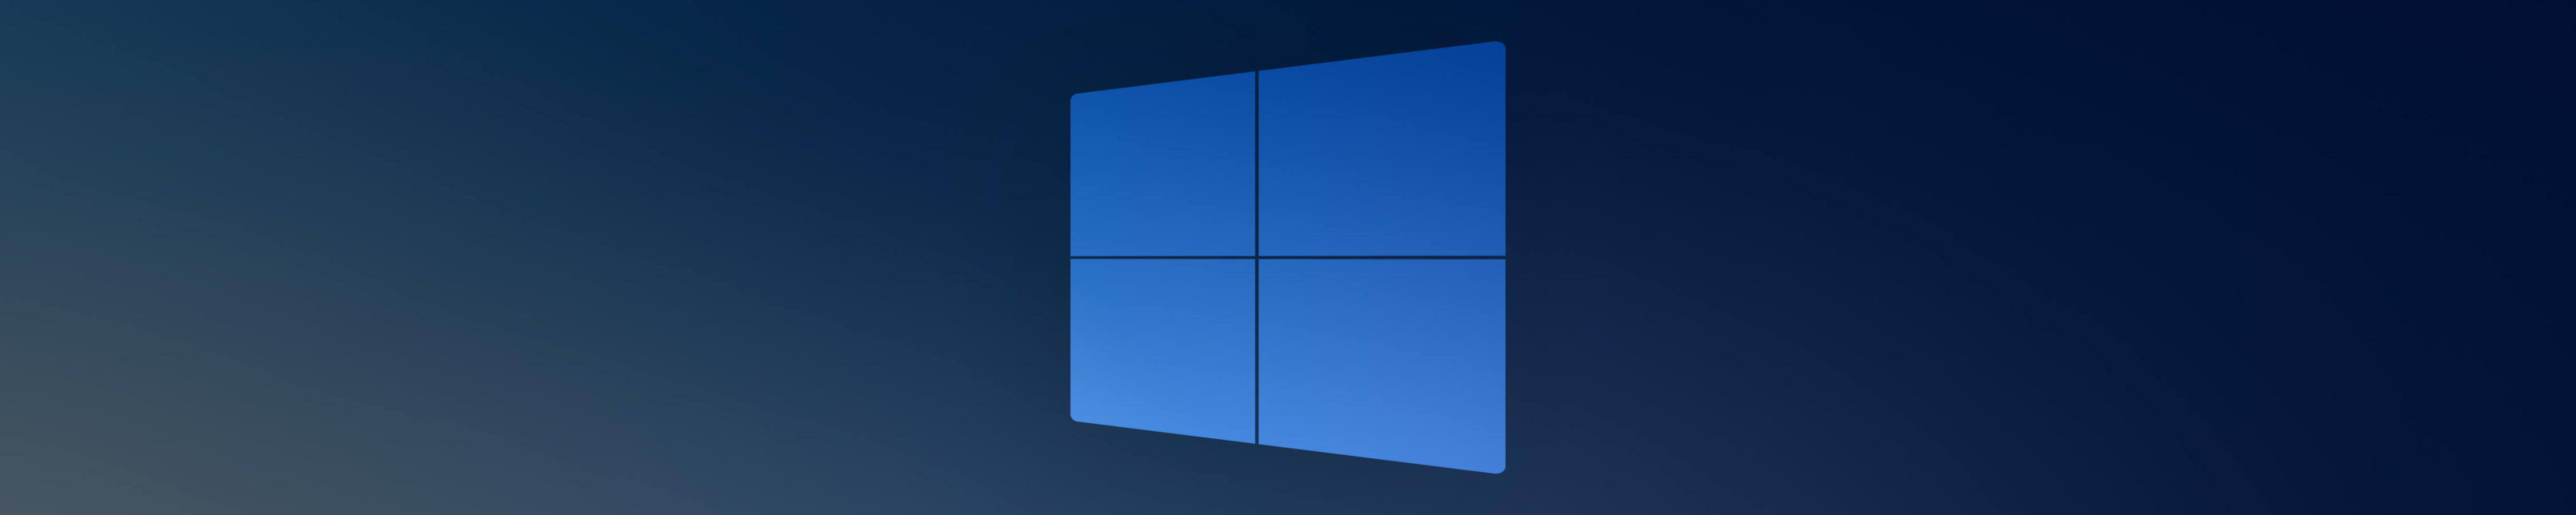 5001x1000 Windows 10x Blue Logo 5001x1000 Resolution Wallpaper Hd Hi